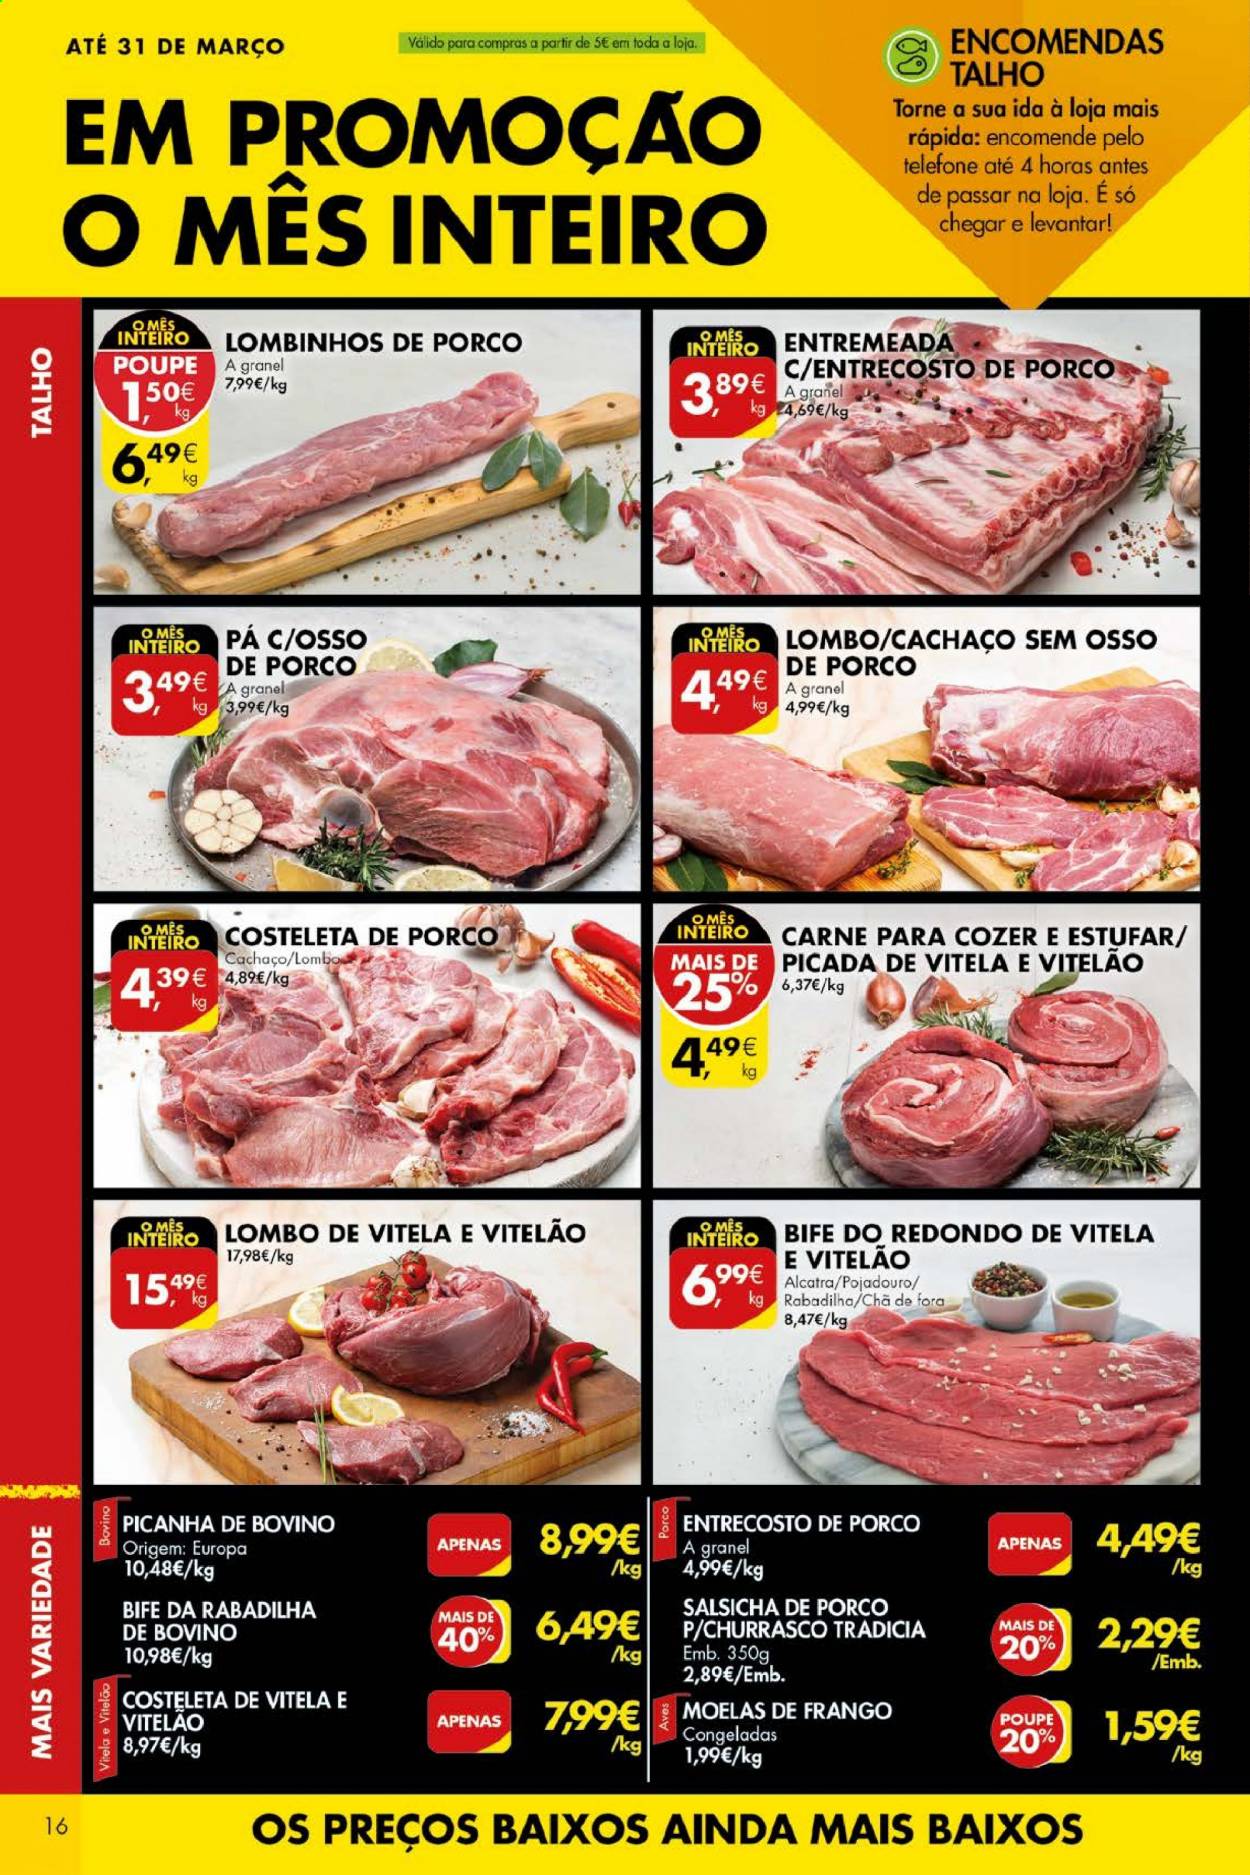 thumbnail - Folheto Pingo Doce - 16.3.2021 - 22.3.2021 - Produtos em promoção - picanha, bife, lombo, carne, costeletas de porco, lombo de porco, entrecosto de porco, moela de frango, alcatra, carne de novilho, salsicha. Página 16.